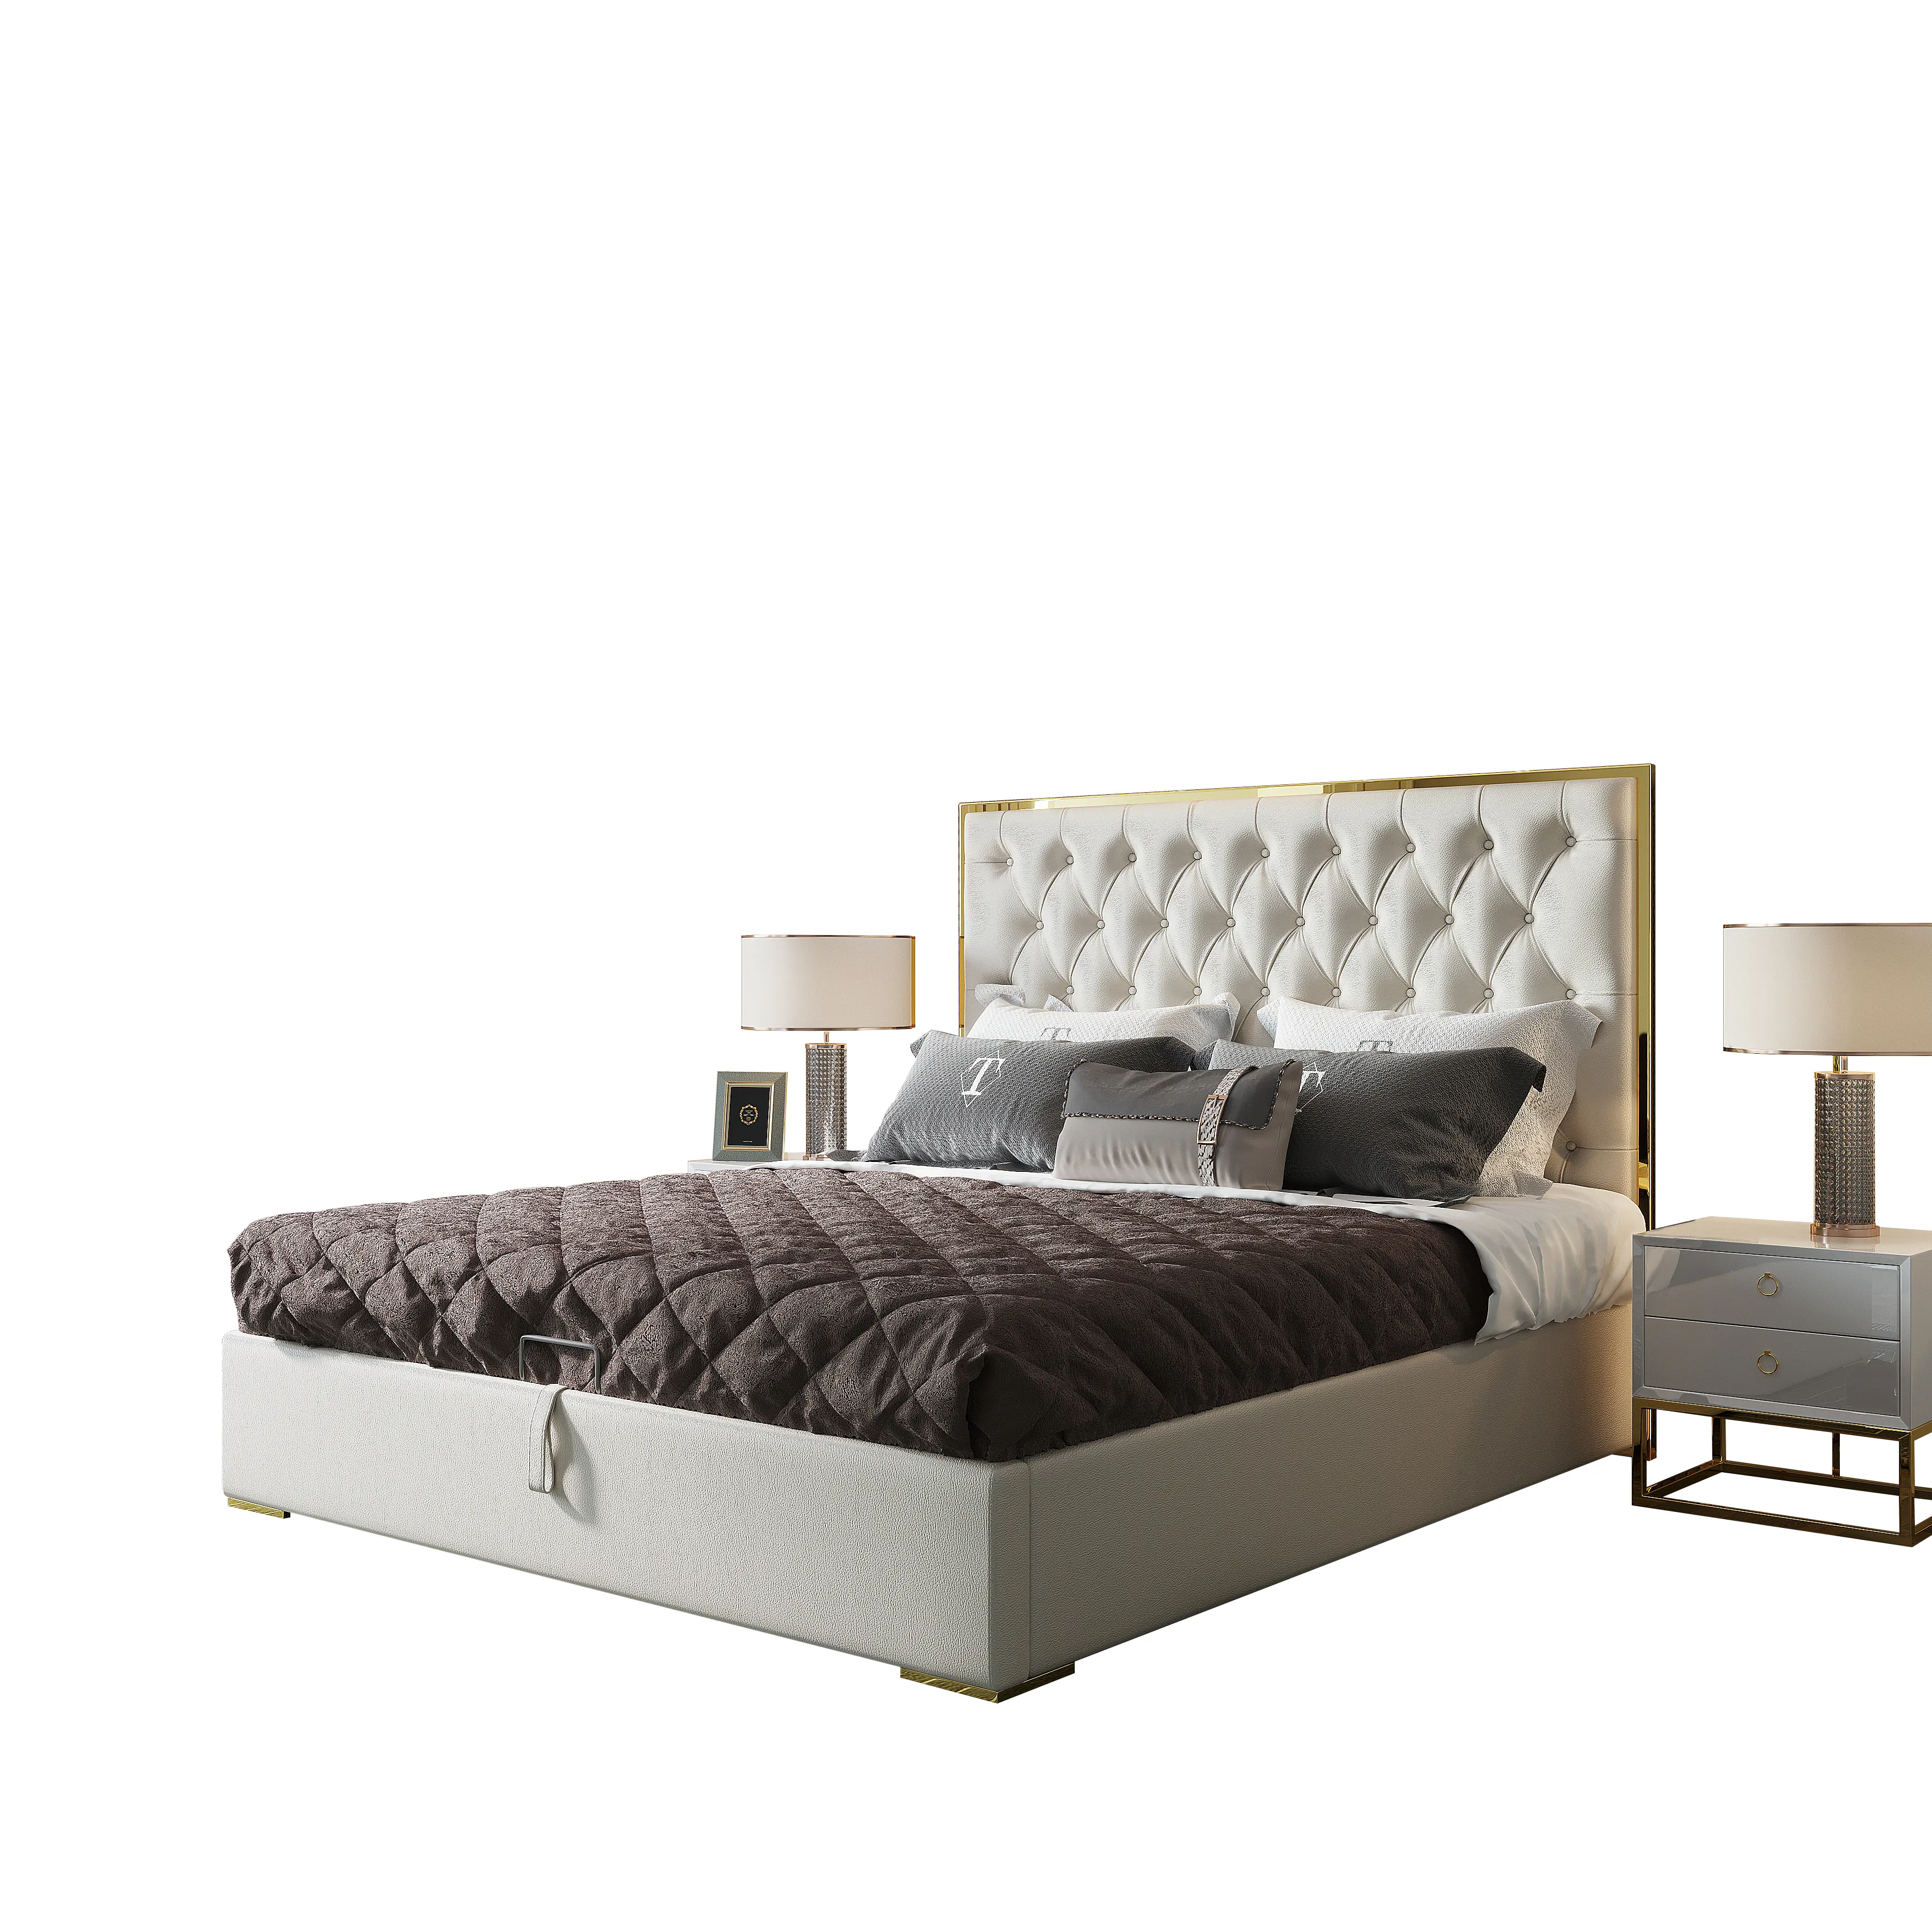 2021 металлические кровати в современном американском стиле Королевского/королевского размера